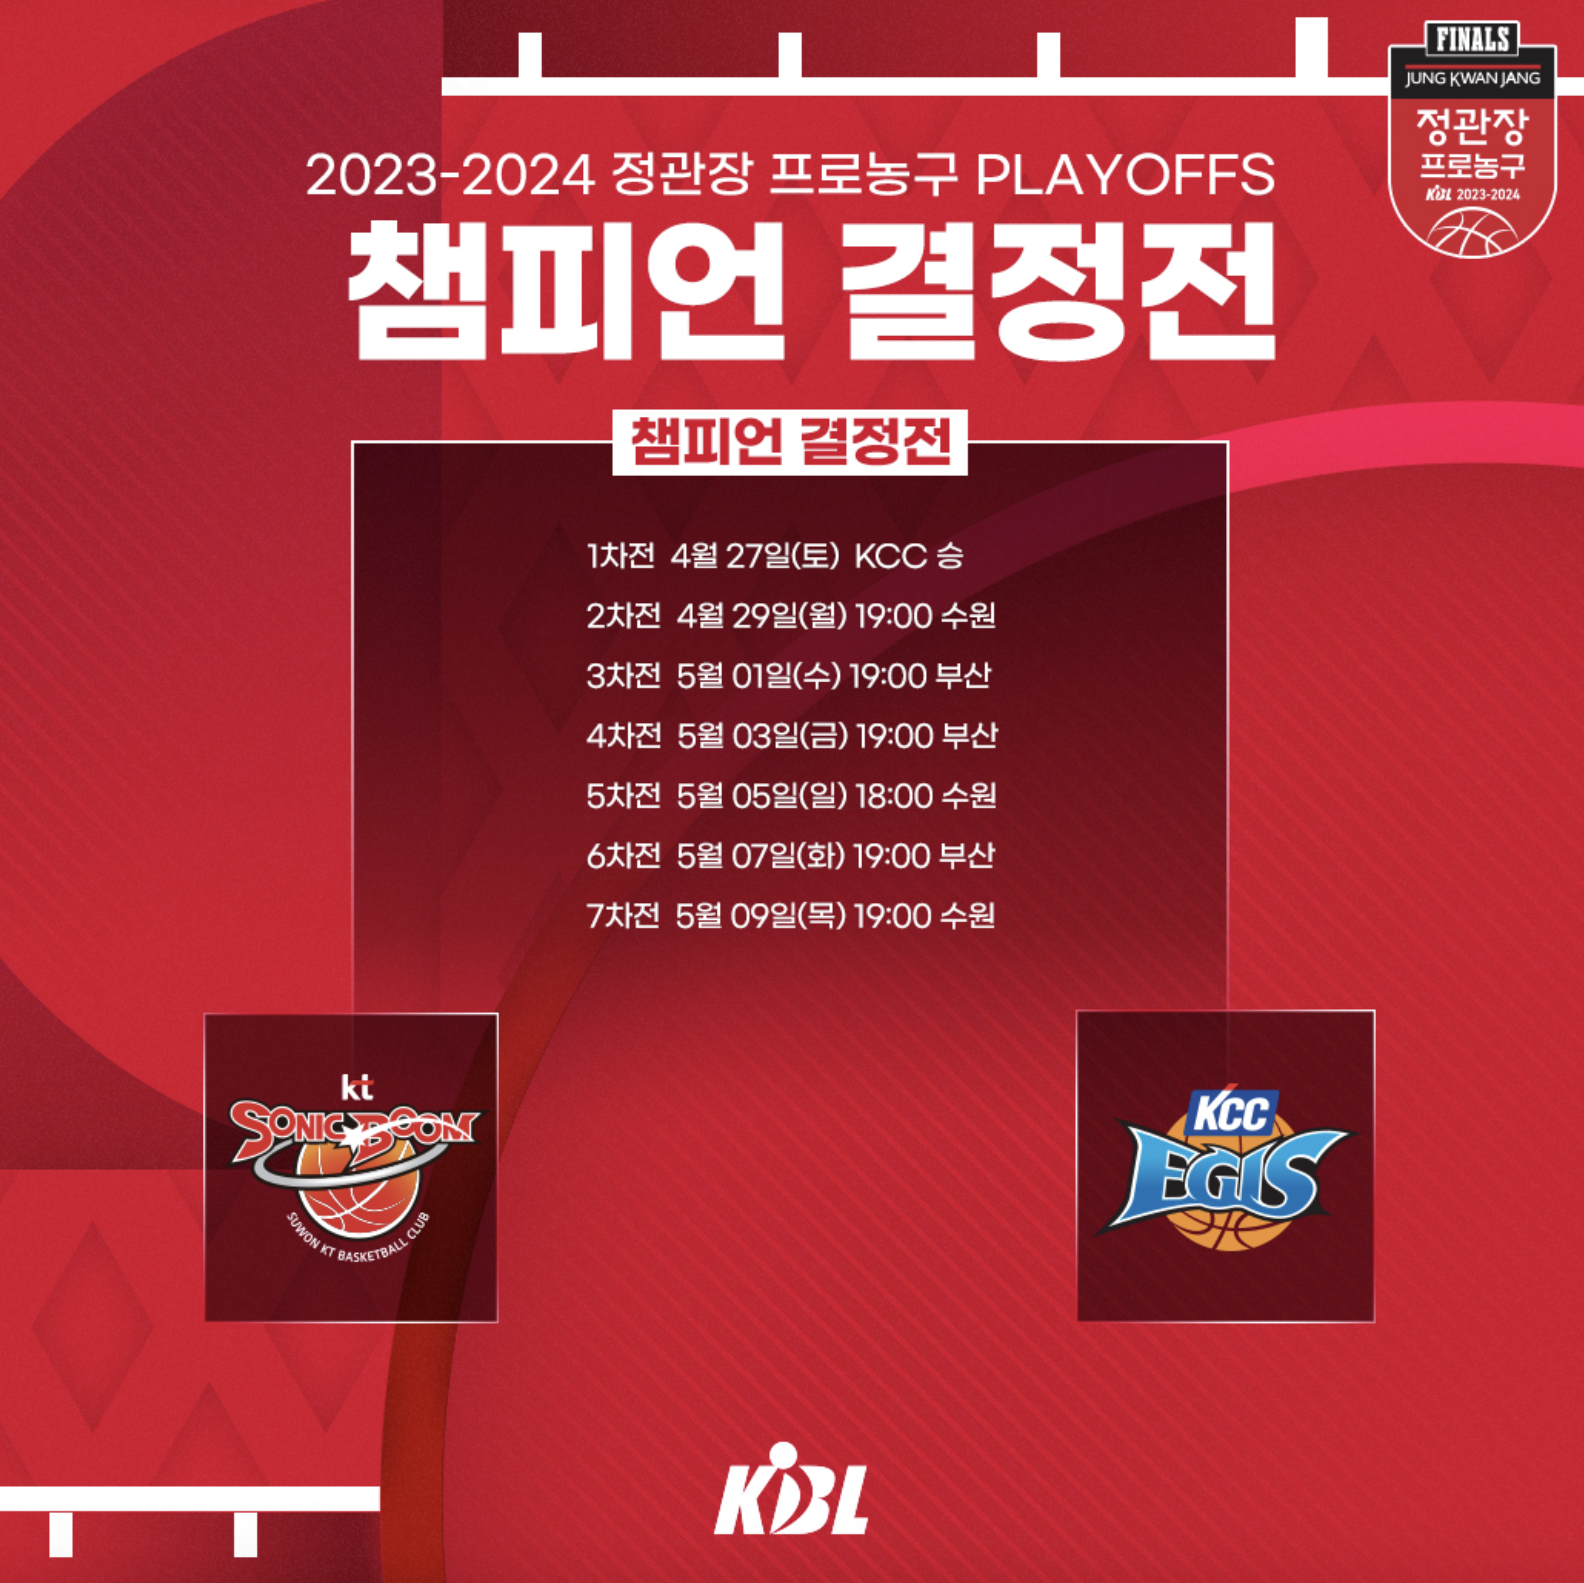 2023-2024 시즌 KBL 플레이오프 챔피언 결정전 일정 안내 이미지입니다.